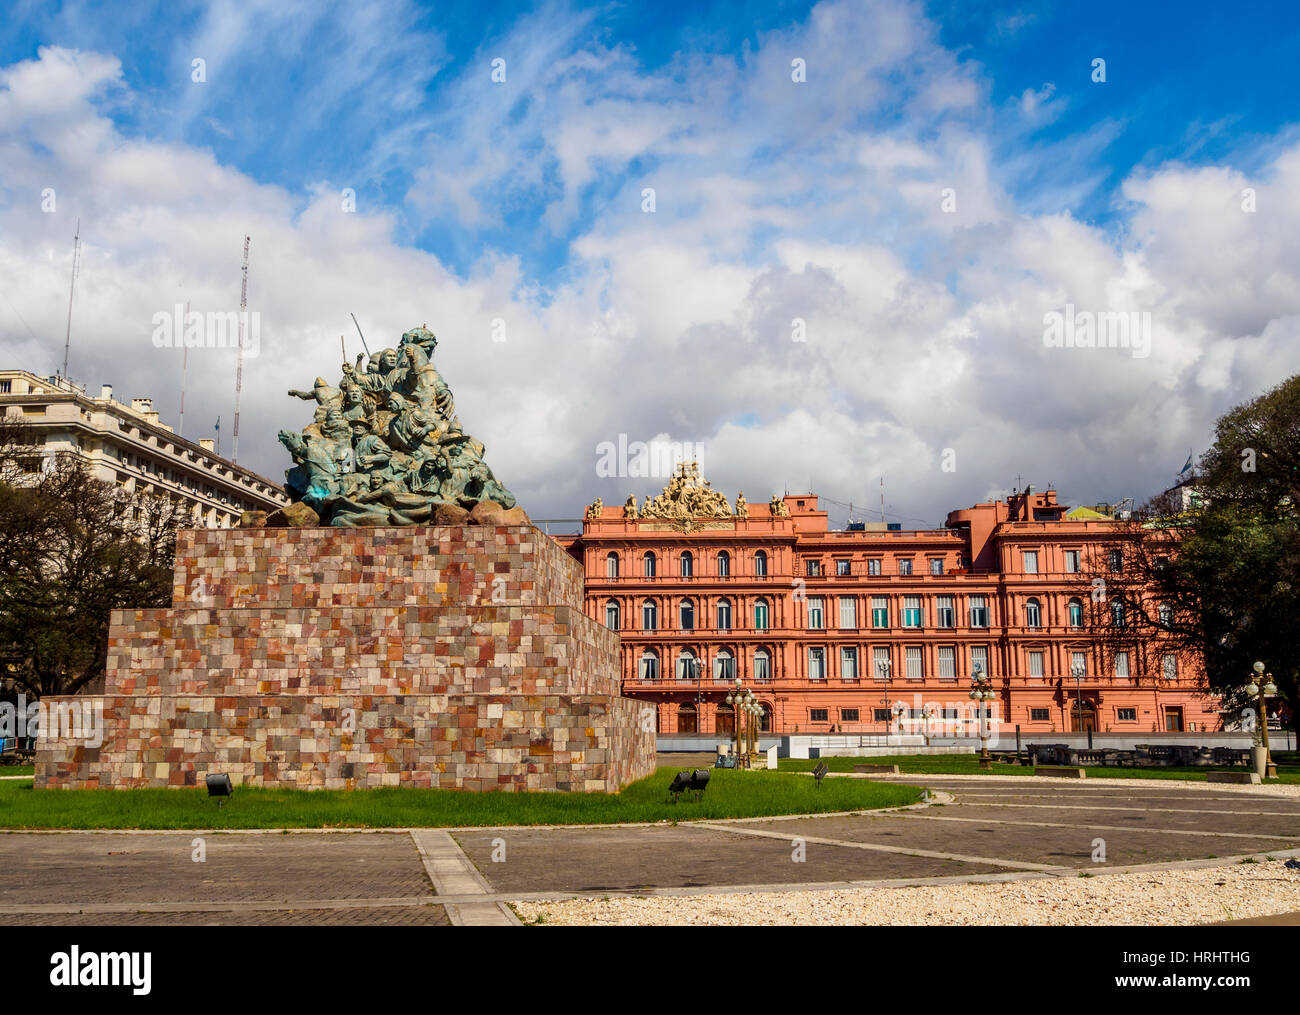 Vue de la Casa Rosada, sur la Plaza de Mayo, Monserrat, ville de Buenos Aires, province de Buenos Aires, Argentine Banque D'Images